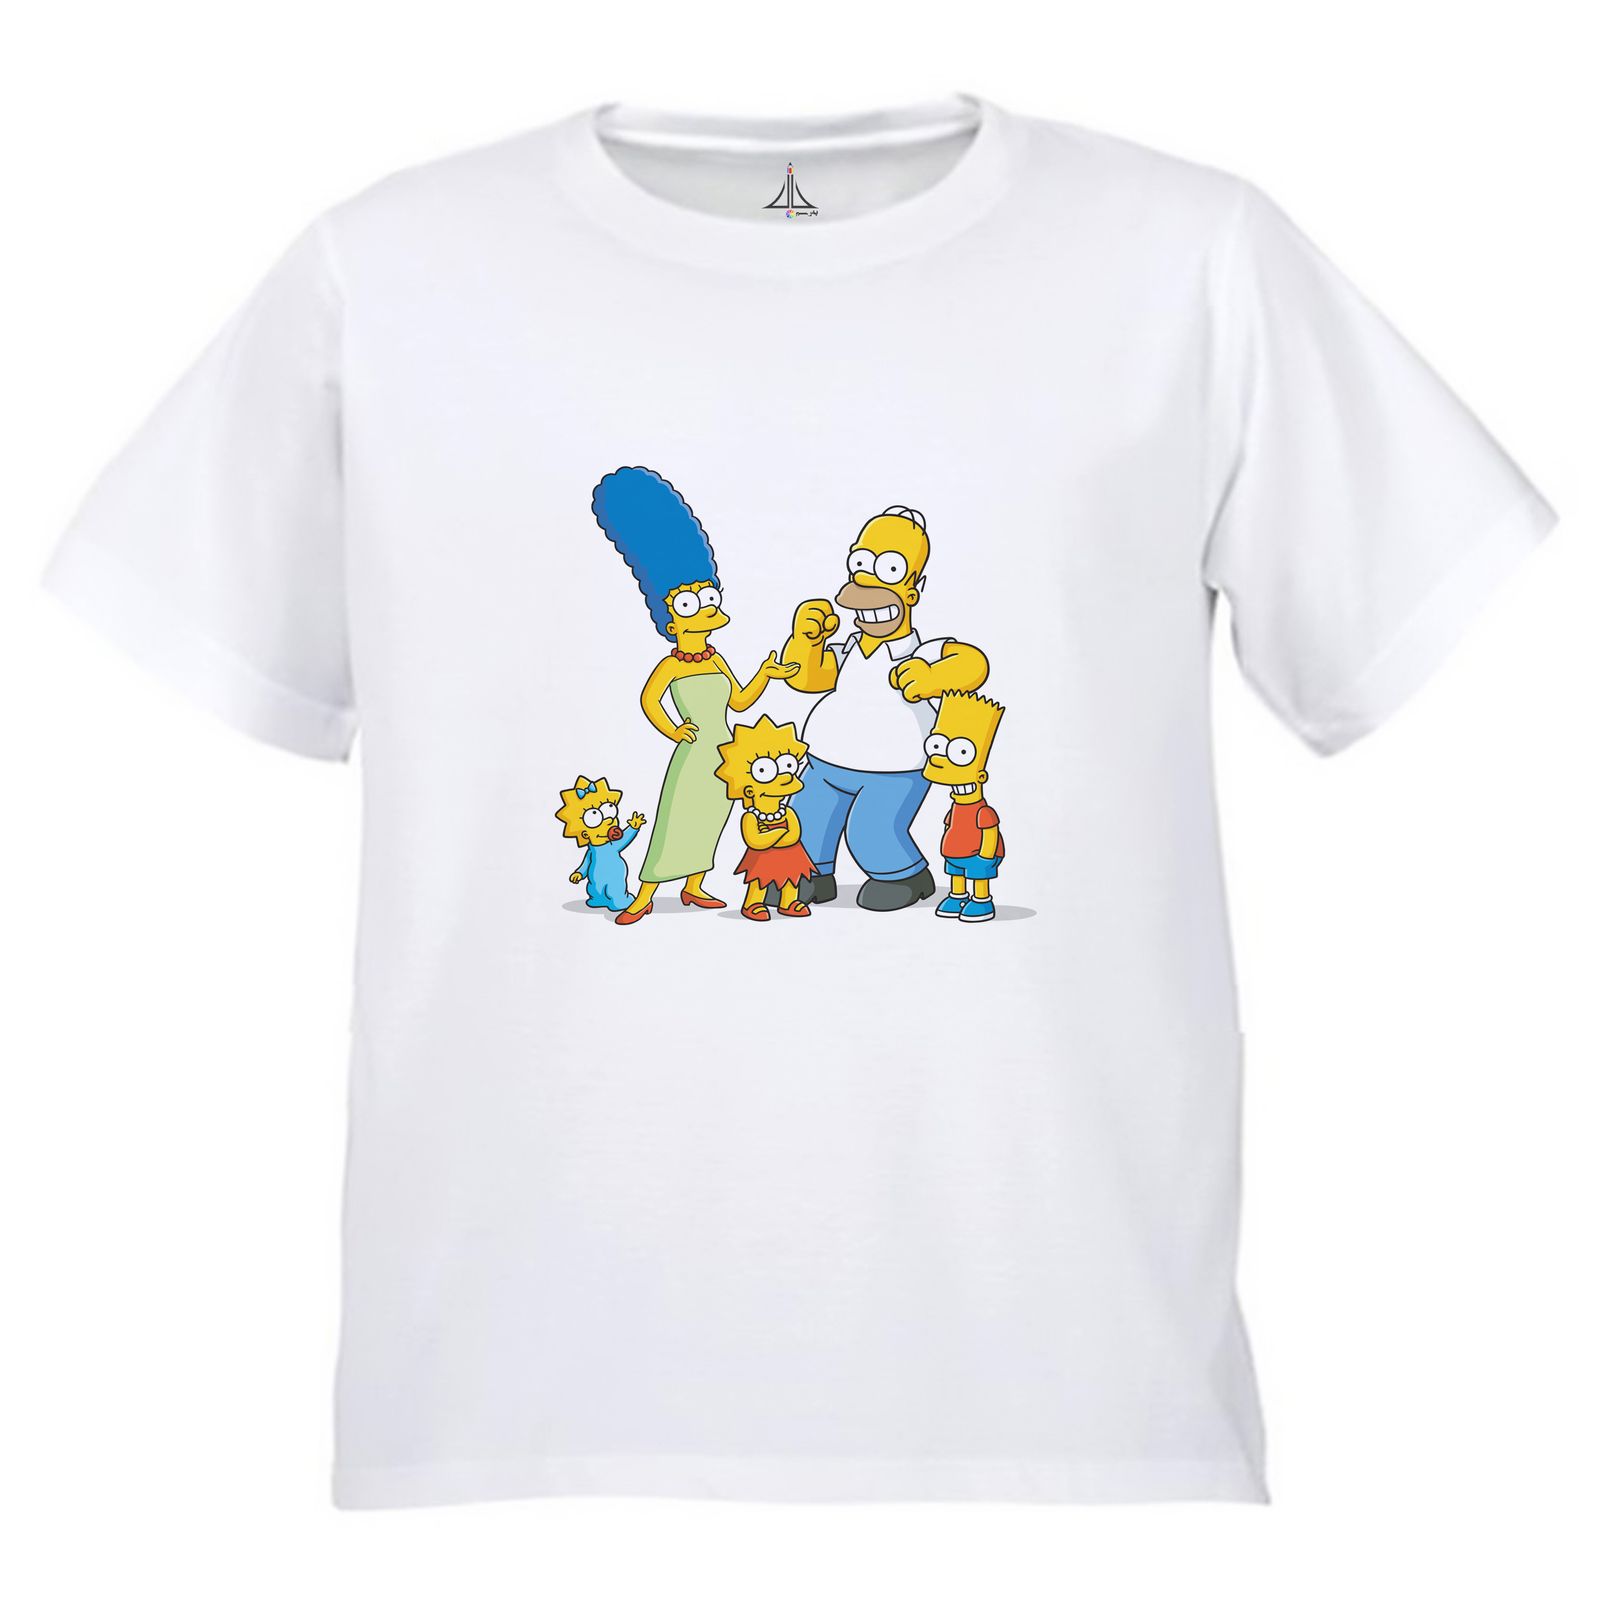 تی شرت آستین کوتاه بچگانه به رسم مدل سیپسون ها کد 9941 -  - 3